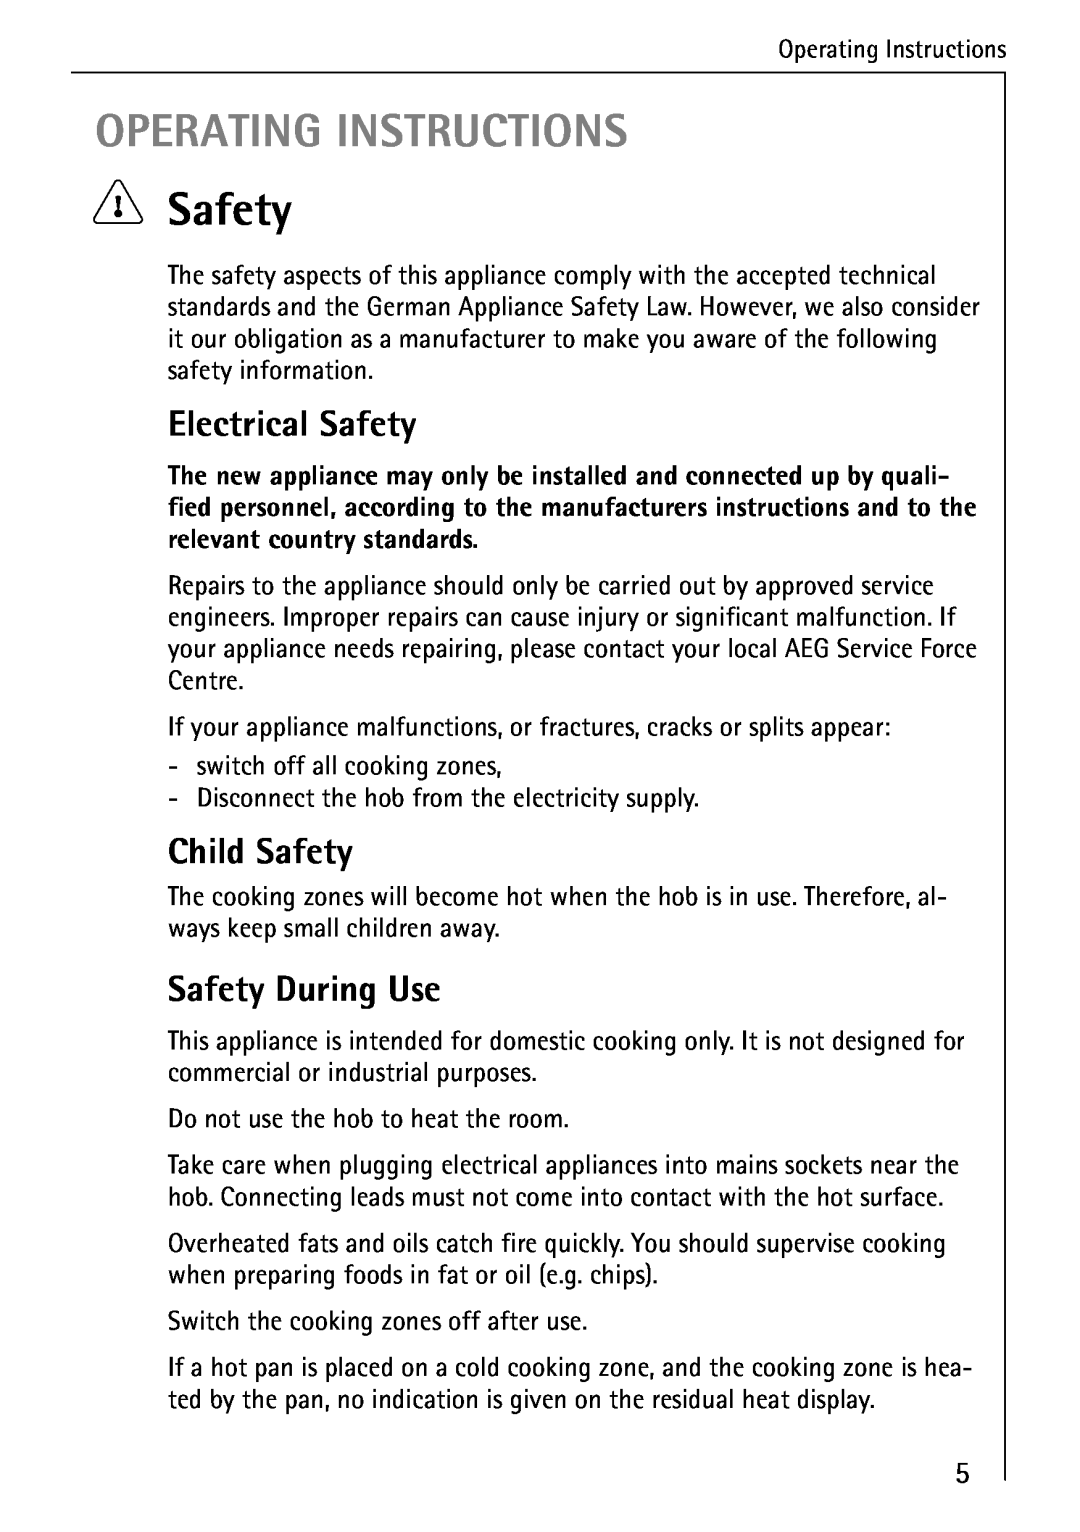 AEG 95300KA-MN operating instructions Operating Instructions, Electrical Safety, Child Safety, Safety During Use 